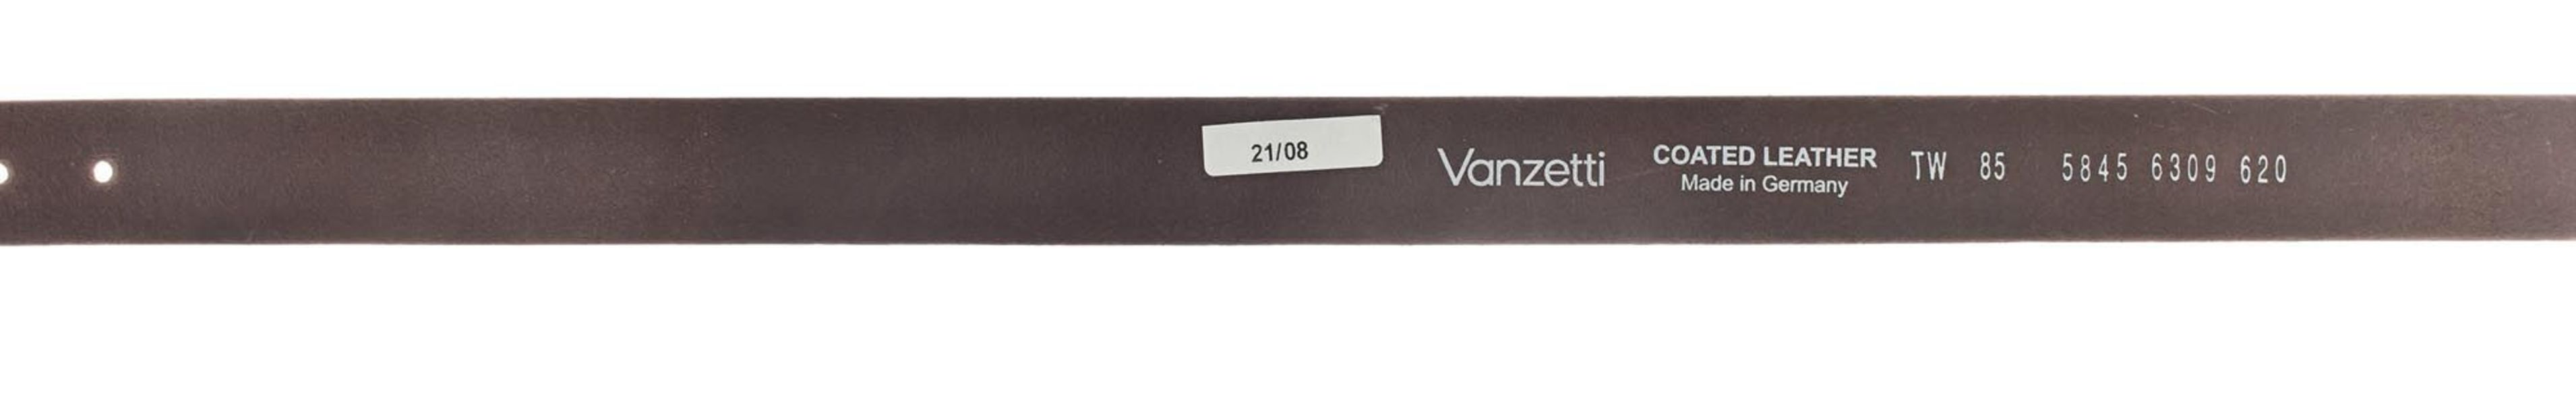 Vanzetti Velvet belt - gray (0620)